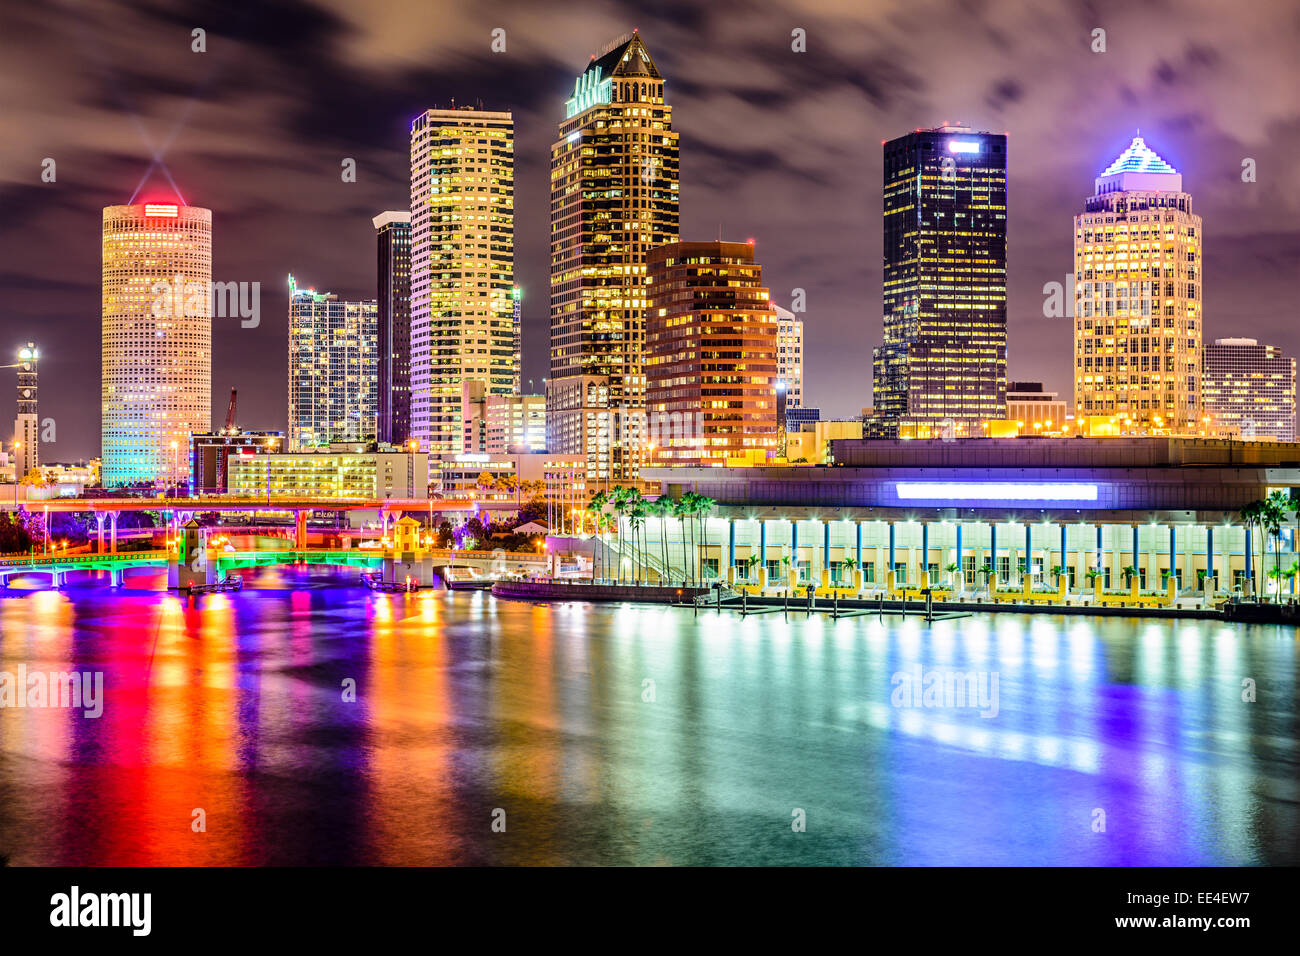 Tampa, Florida, EE.UU. el centro de la ciudad al río Hillsborough. Foto de stock